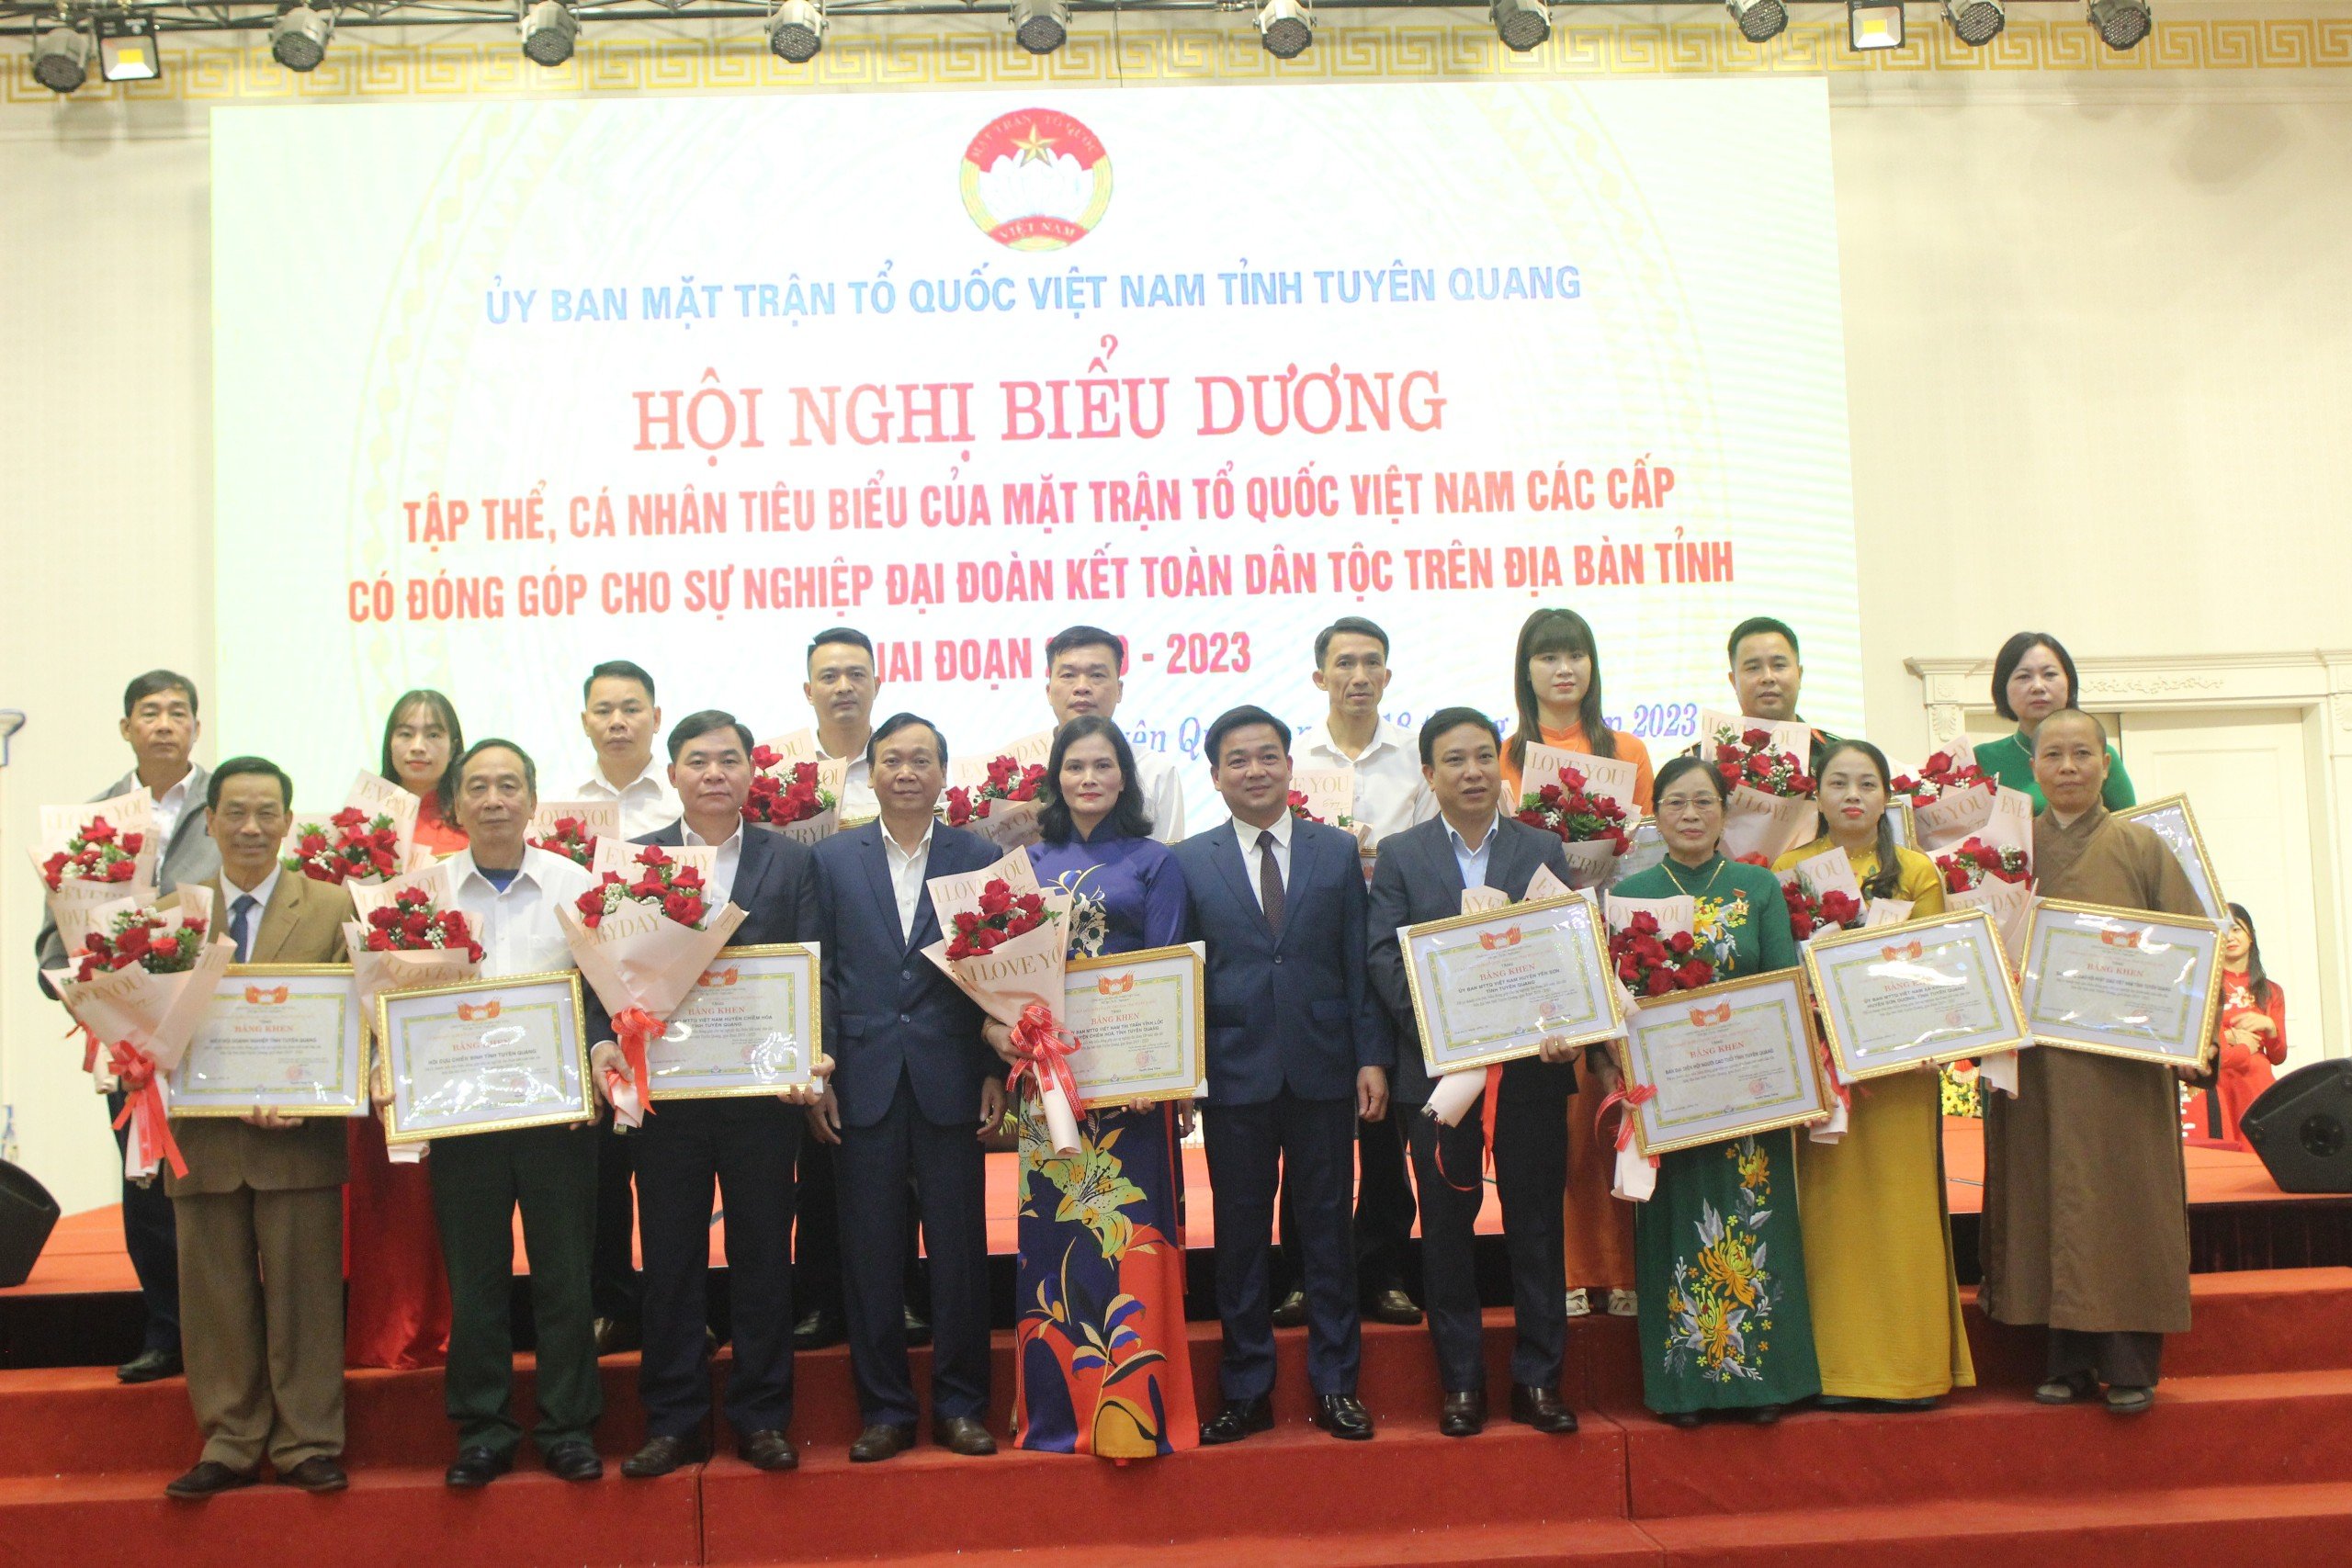 Ủy ban MTTQ tỉnh Tuyên Quang biểu dương 17 tập thể, 74 cá nhân tiêu biểu của MTTQ các cấp có đóng góp cho sự nghiệp đại đoàn kết toàn dân tộc trên địa bàn tỉnh, giai đoạn 2019 – 2023